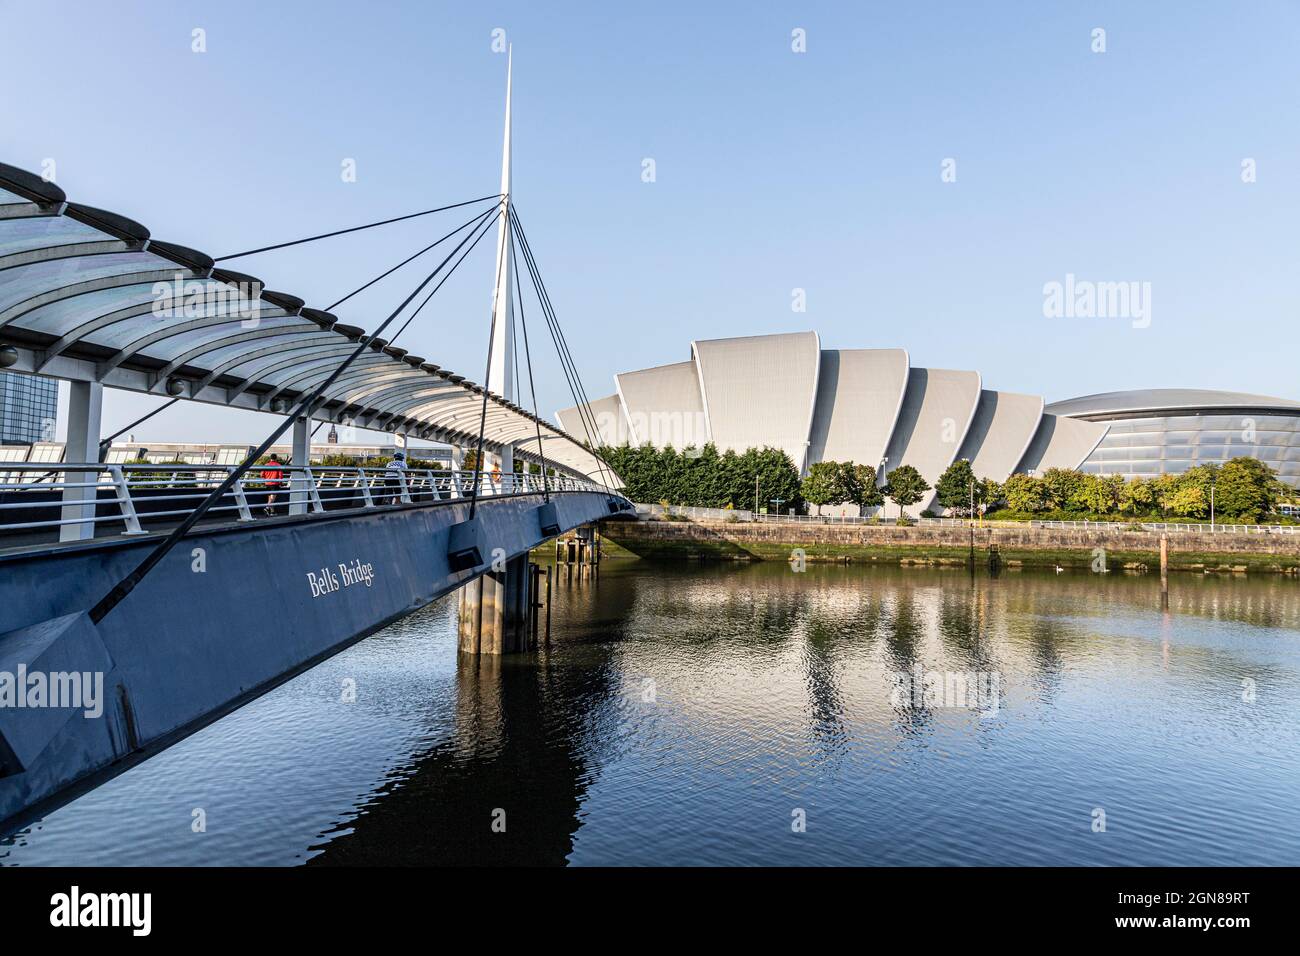 Le Scottish Event Campus (SEC) et le SSE Hydro à côté de Bells Bridge, au-dessus de la rivière Clyde, à Glasgow, en Écosse, au Royaume-Uni Banque D'Images